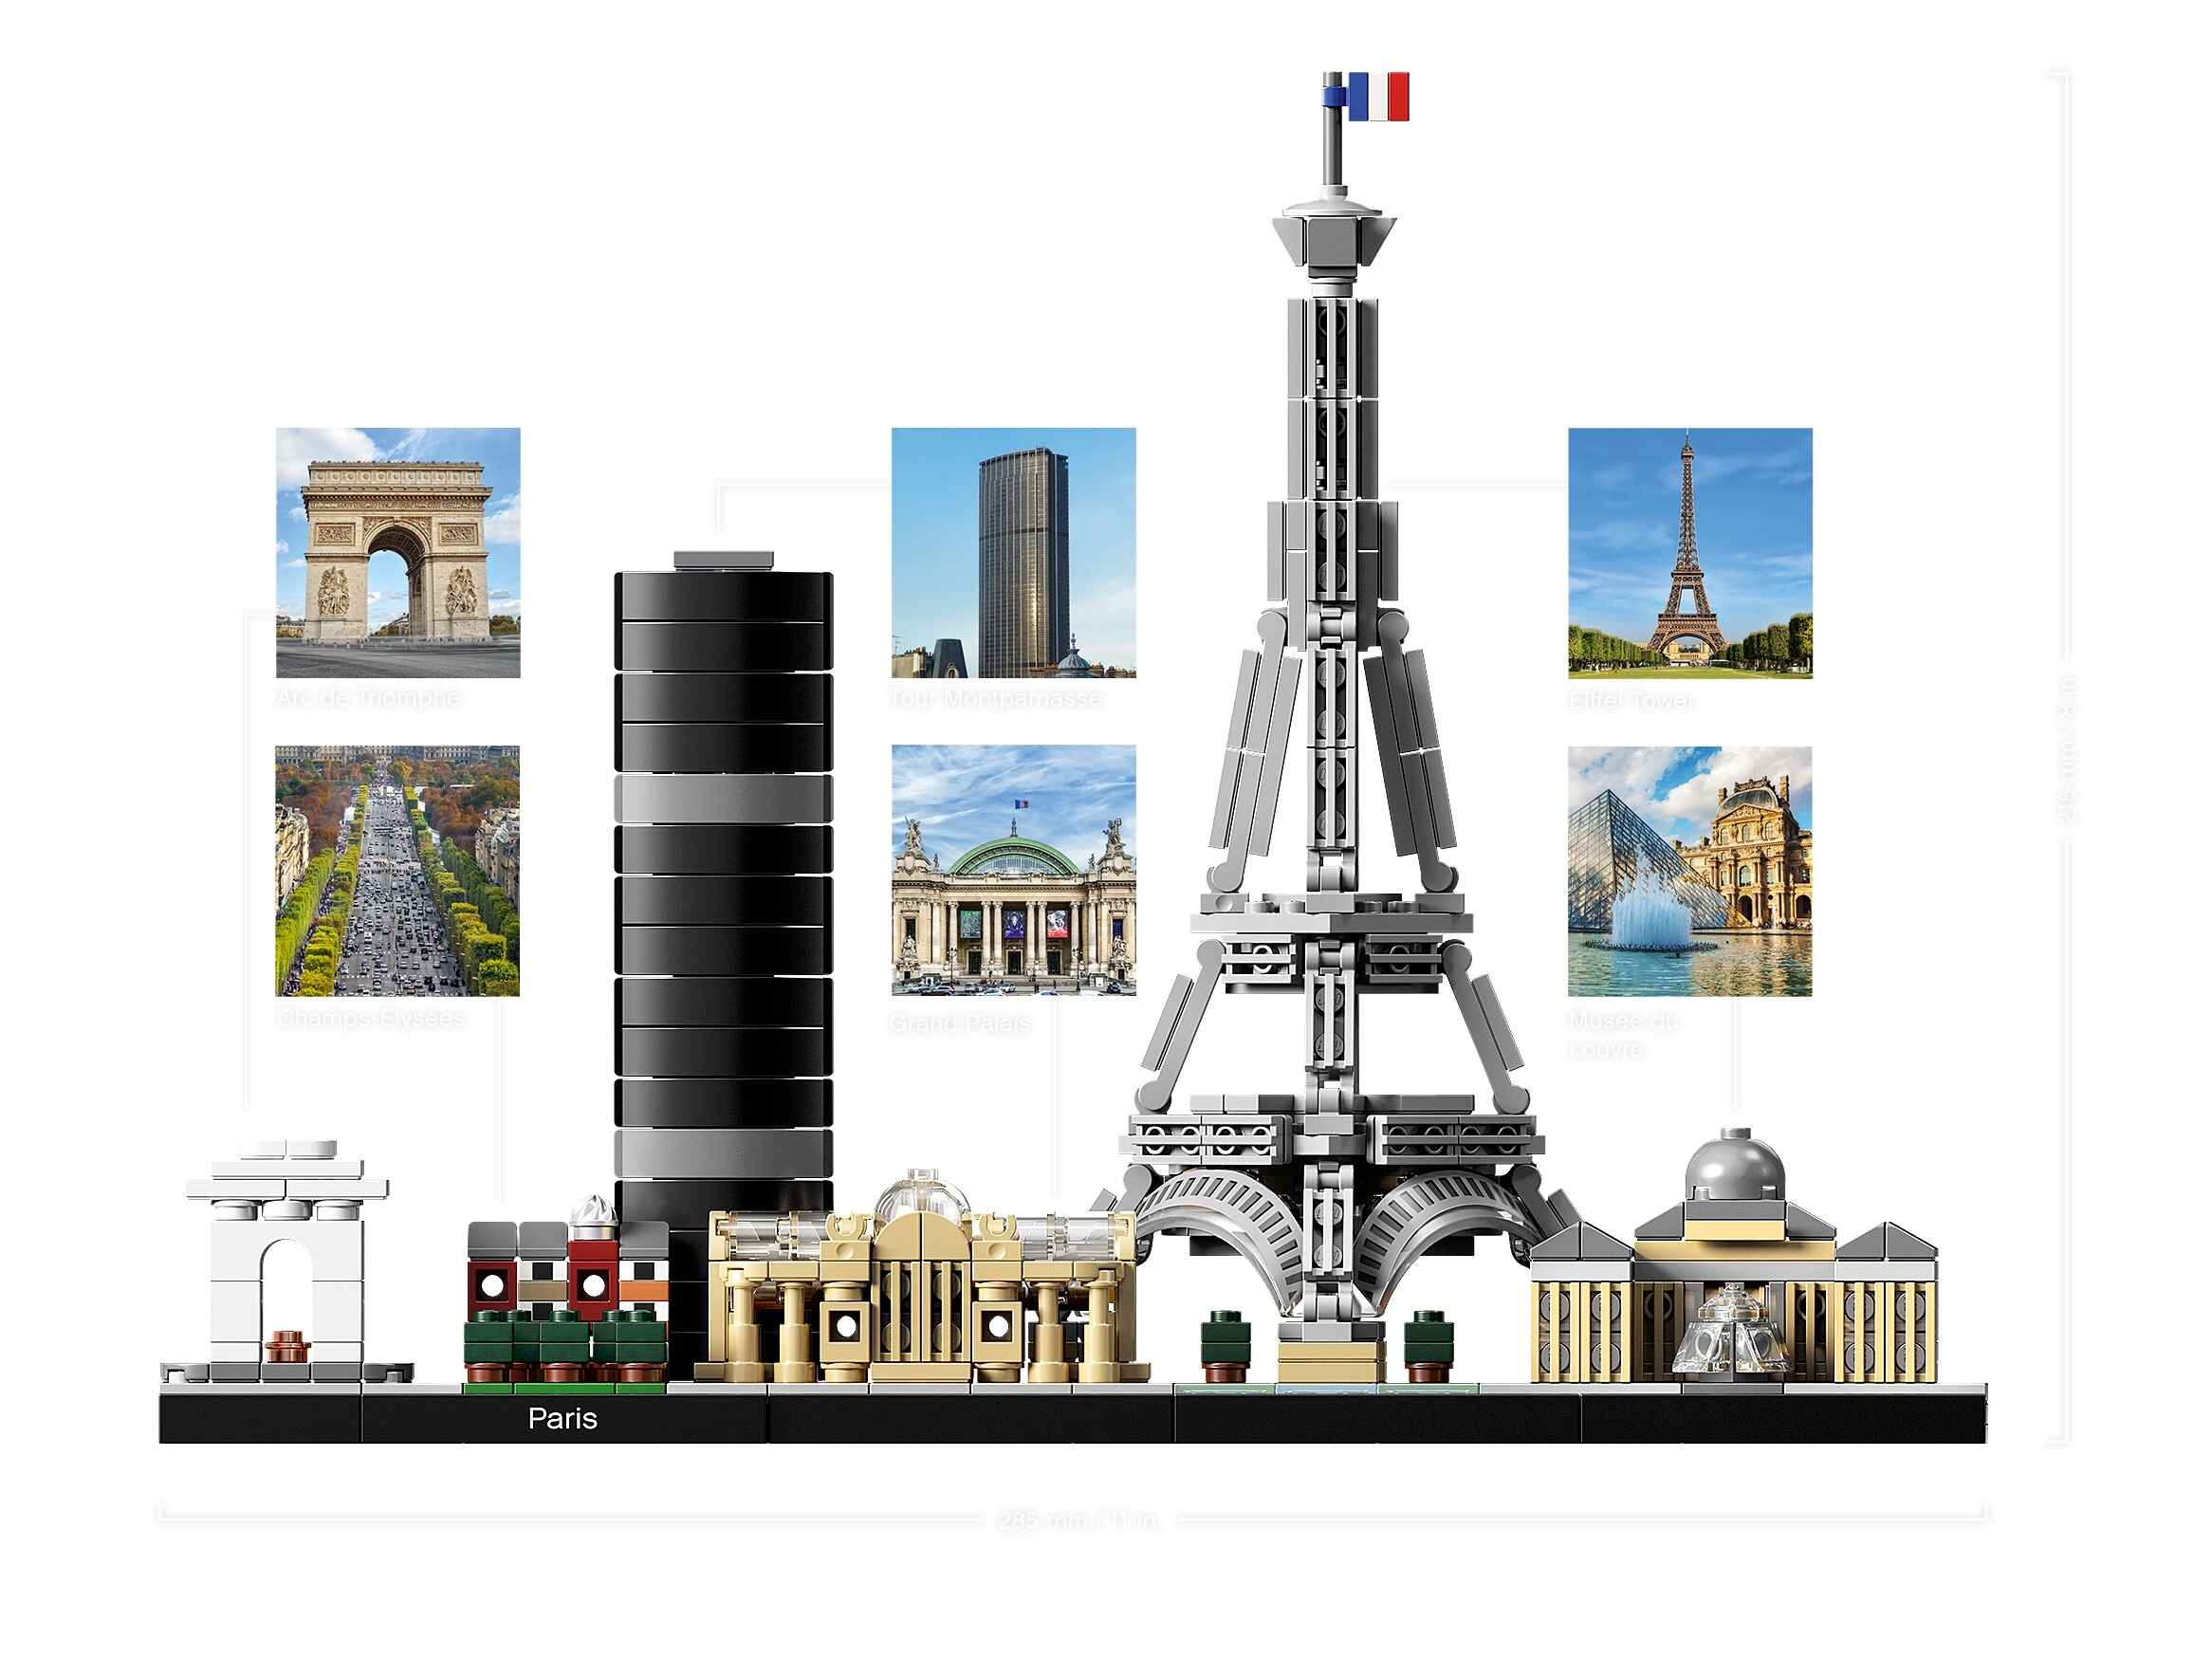 LEGO 21044 Architecture Paris, Modellbausatz mit Eiffelturm und Louvre-Modell